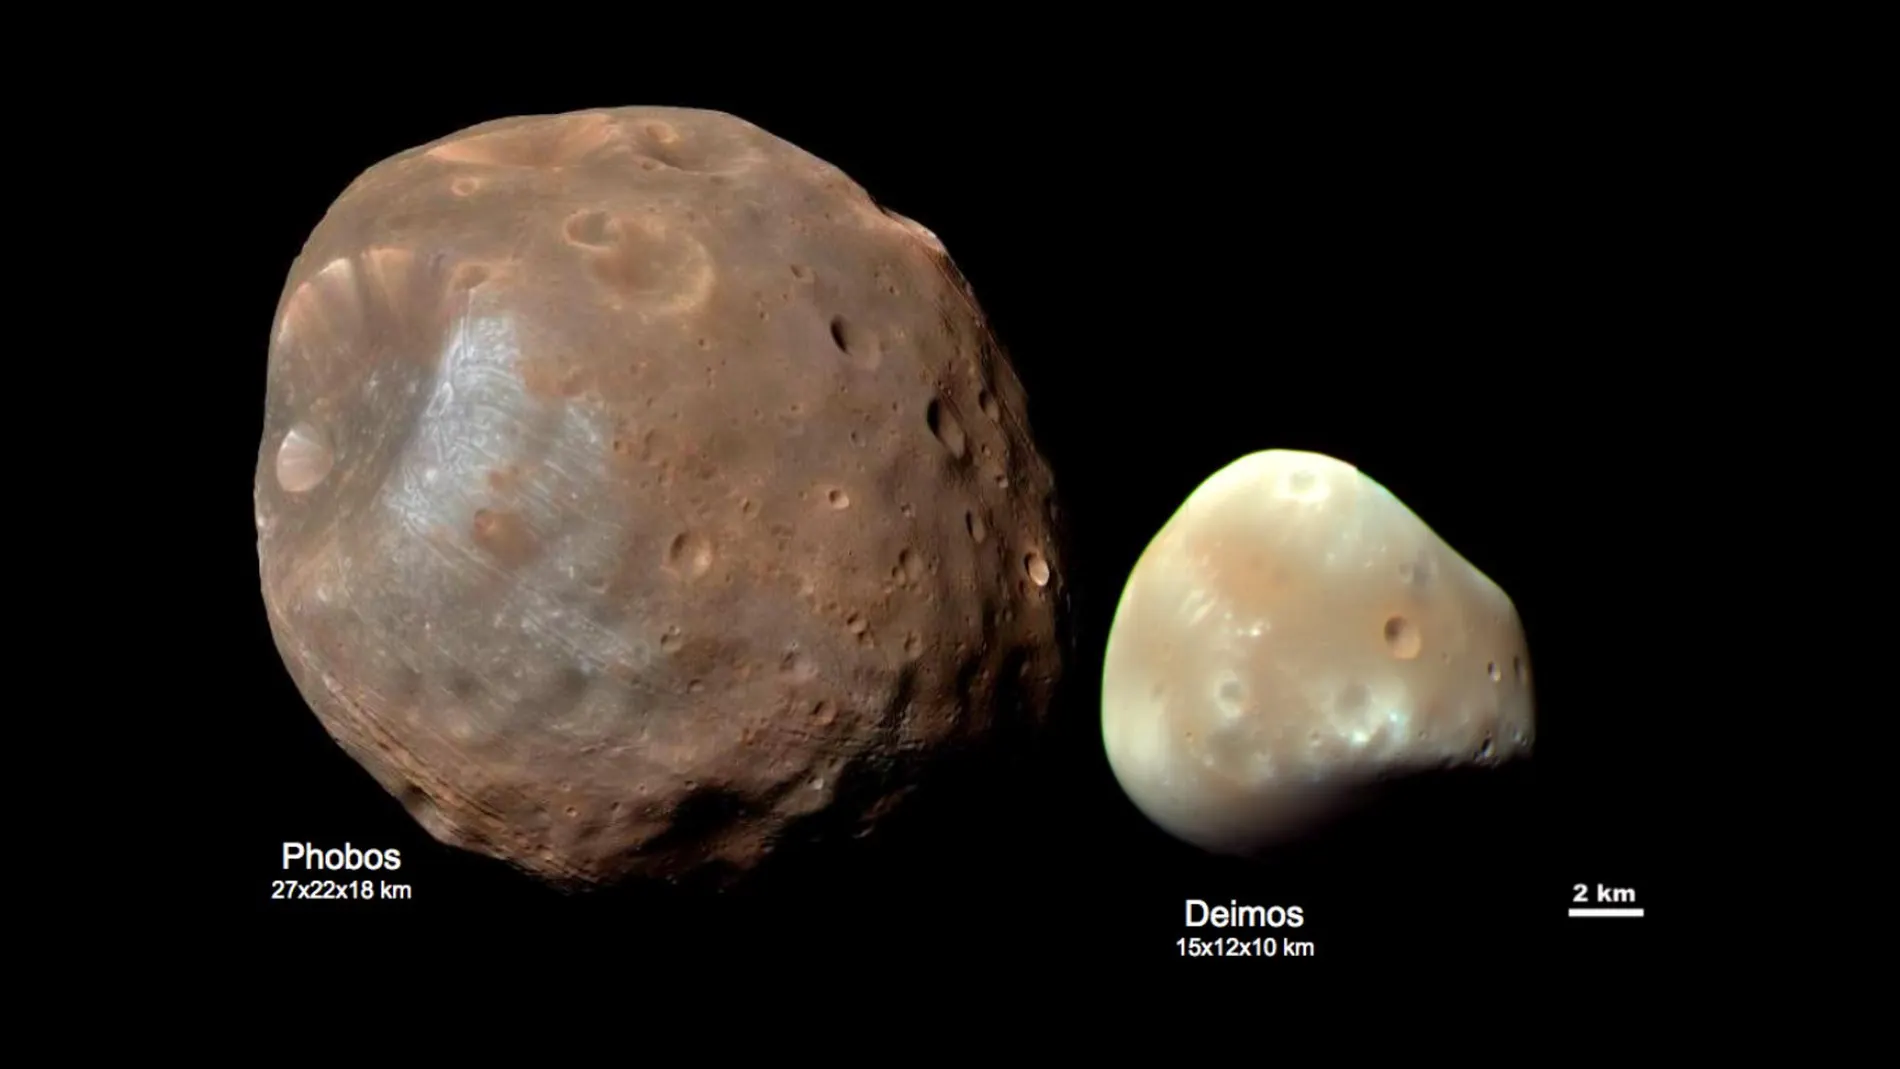 Imagen comparando los tamaños e las dos irregulares lunas de Marte: Fobos y Deimos.